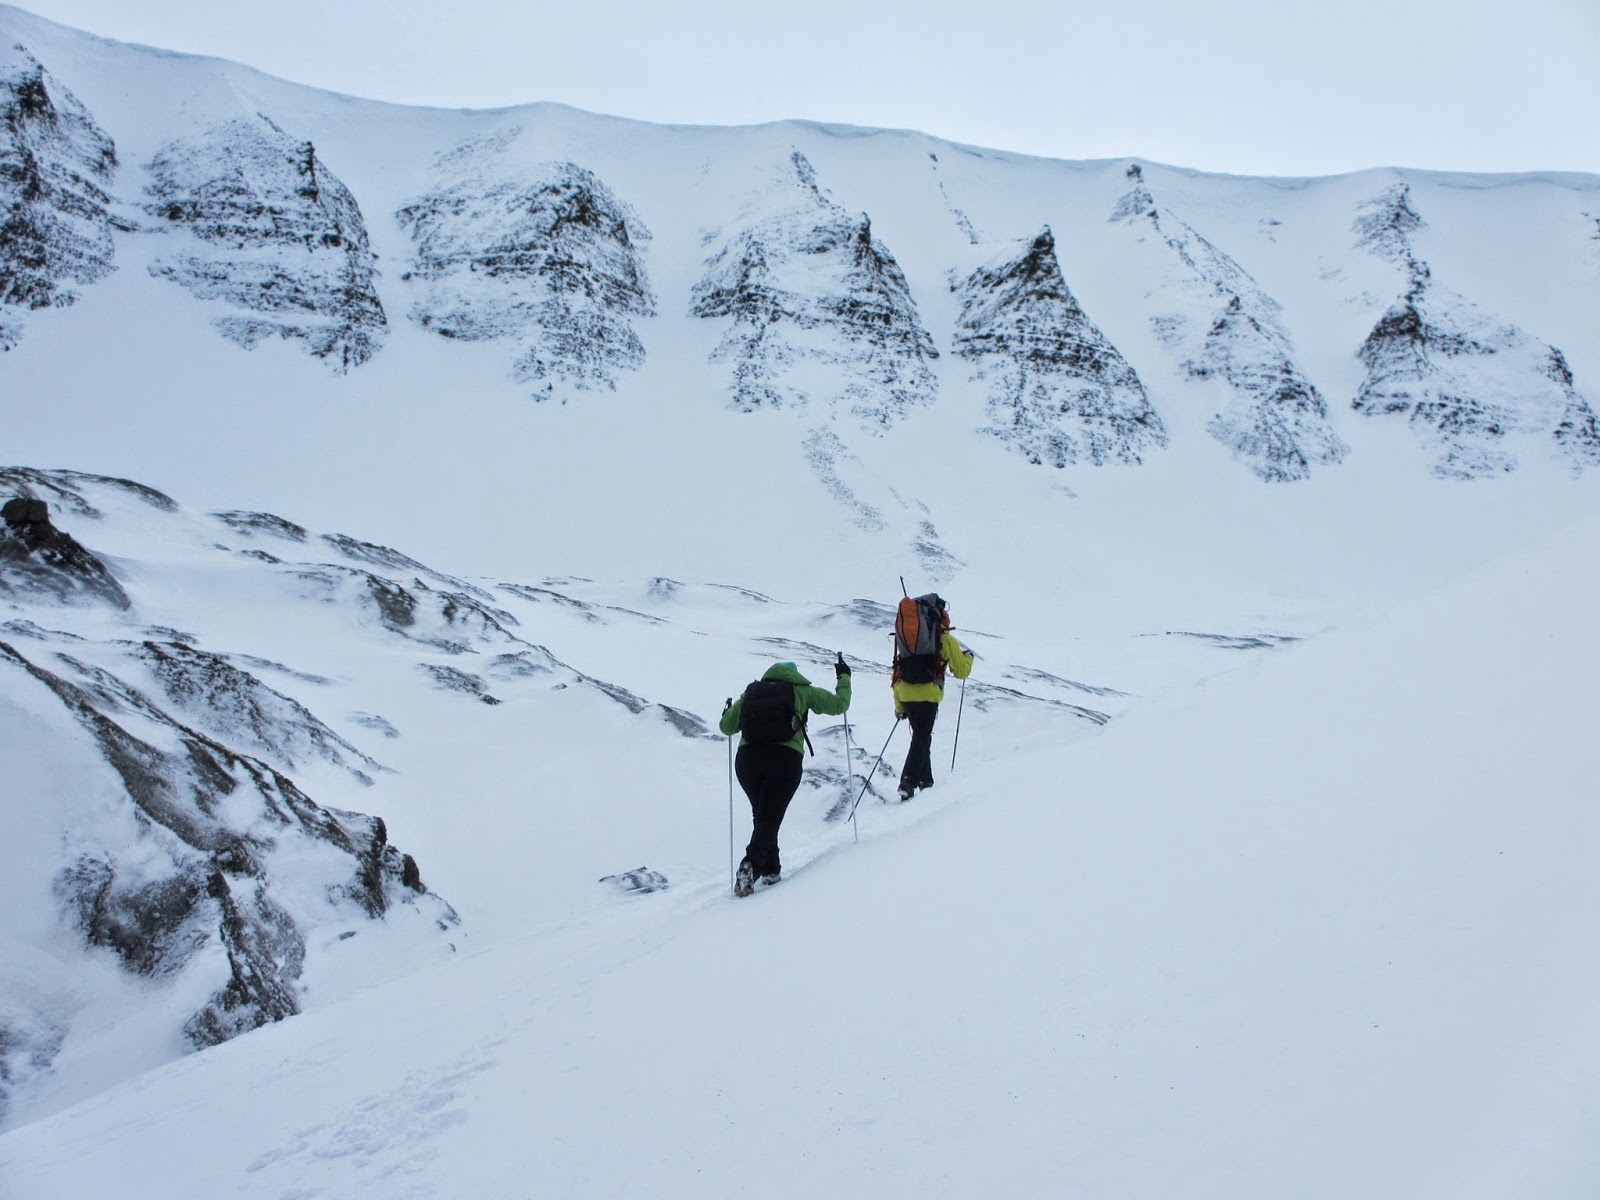 TRILHOS INVERNAIS e viagem ao interior do glaciar Lars em Svalbard | Noruega